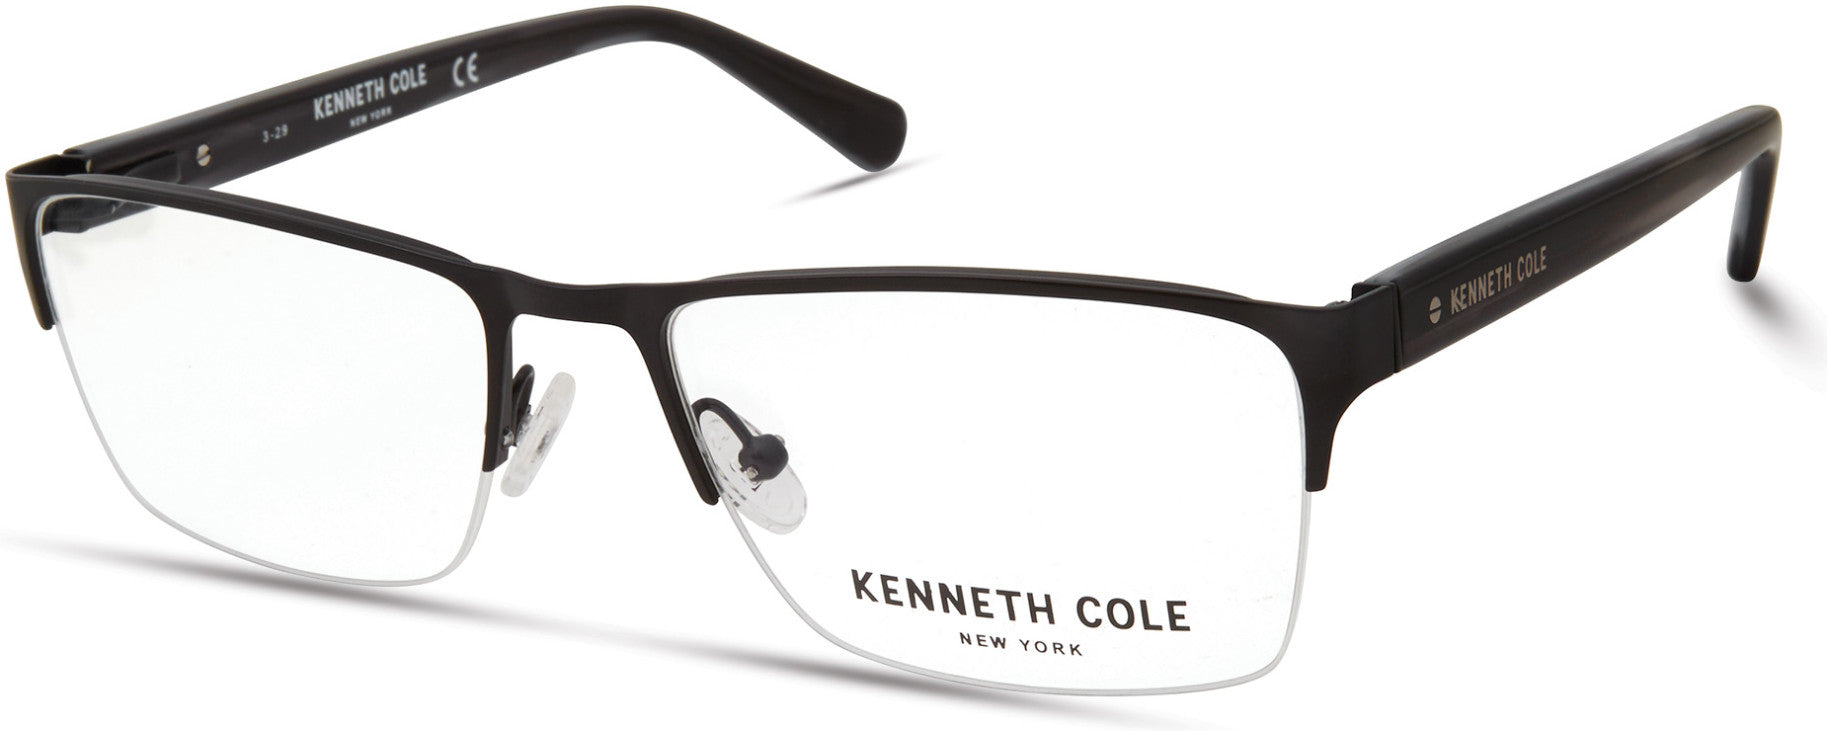 Kenneth Cole New York,Kenneth Cole Reaction KC0313 Eyeglasses 002-002 - Matte Black